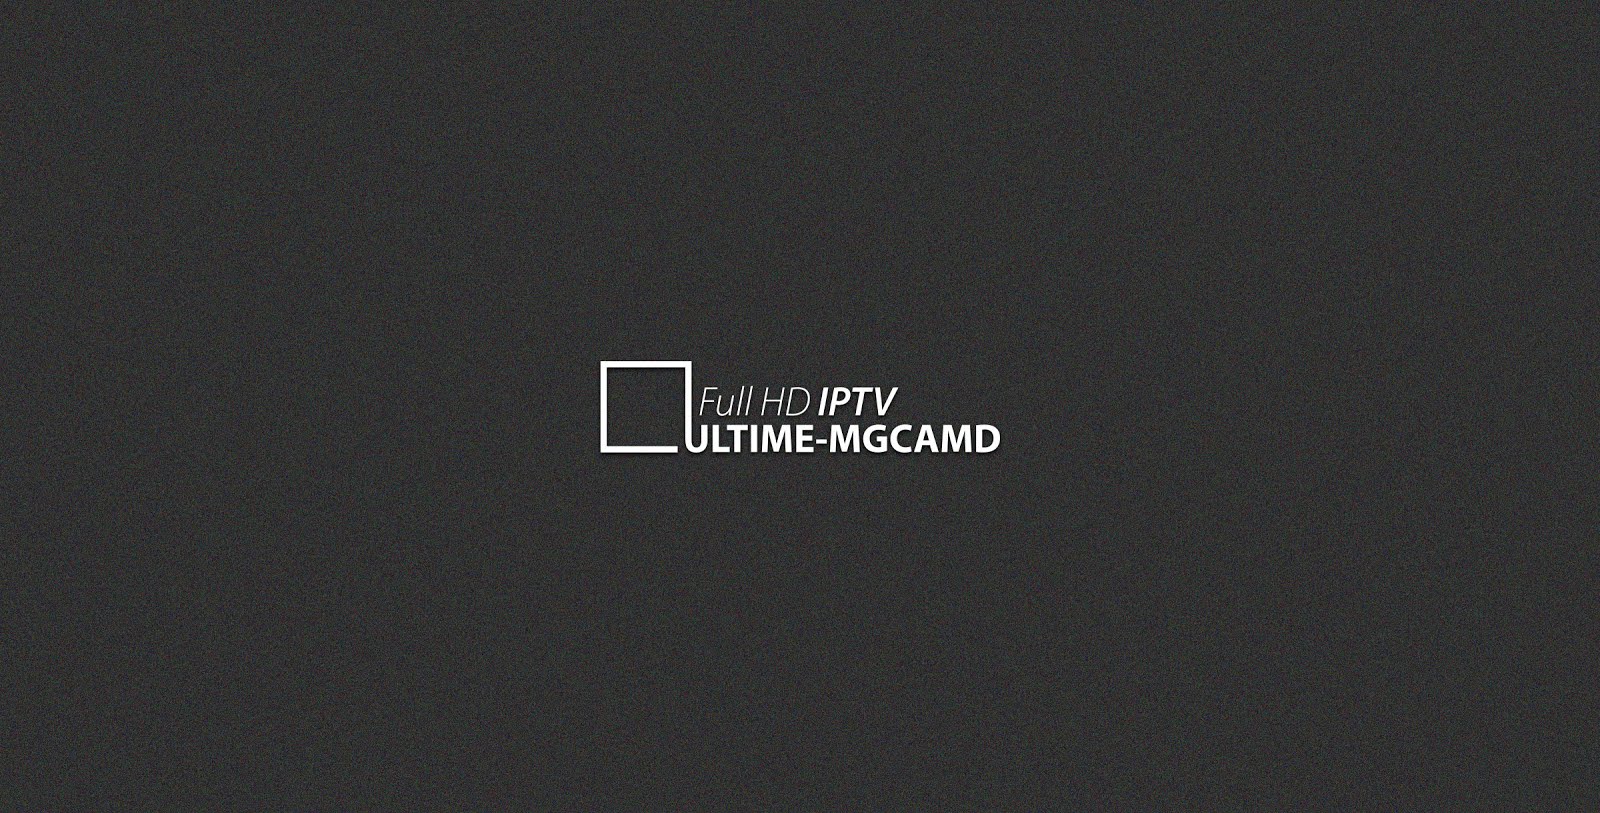 IPTV by ULTIME-MGCAMD